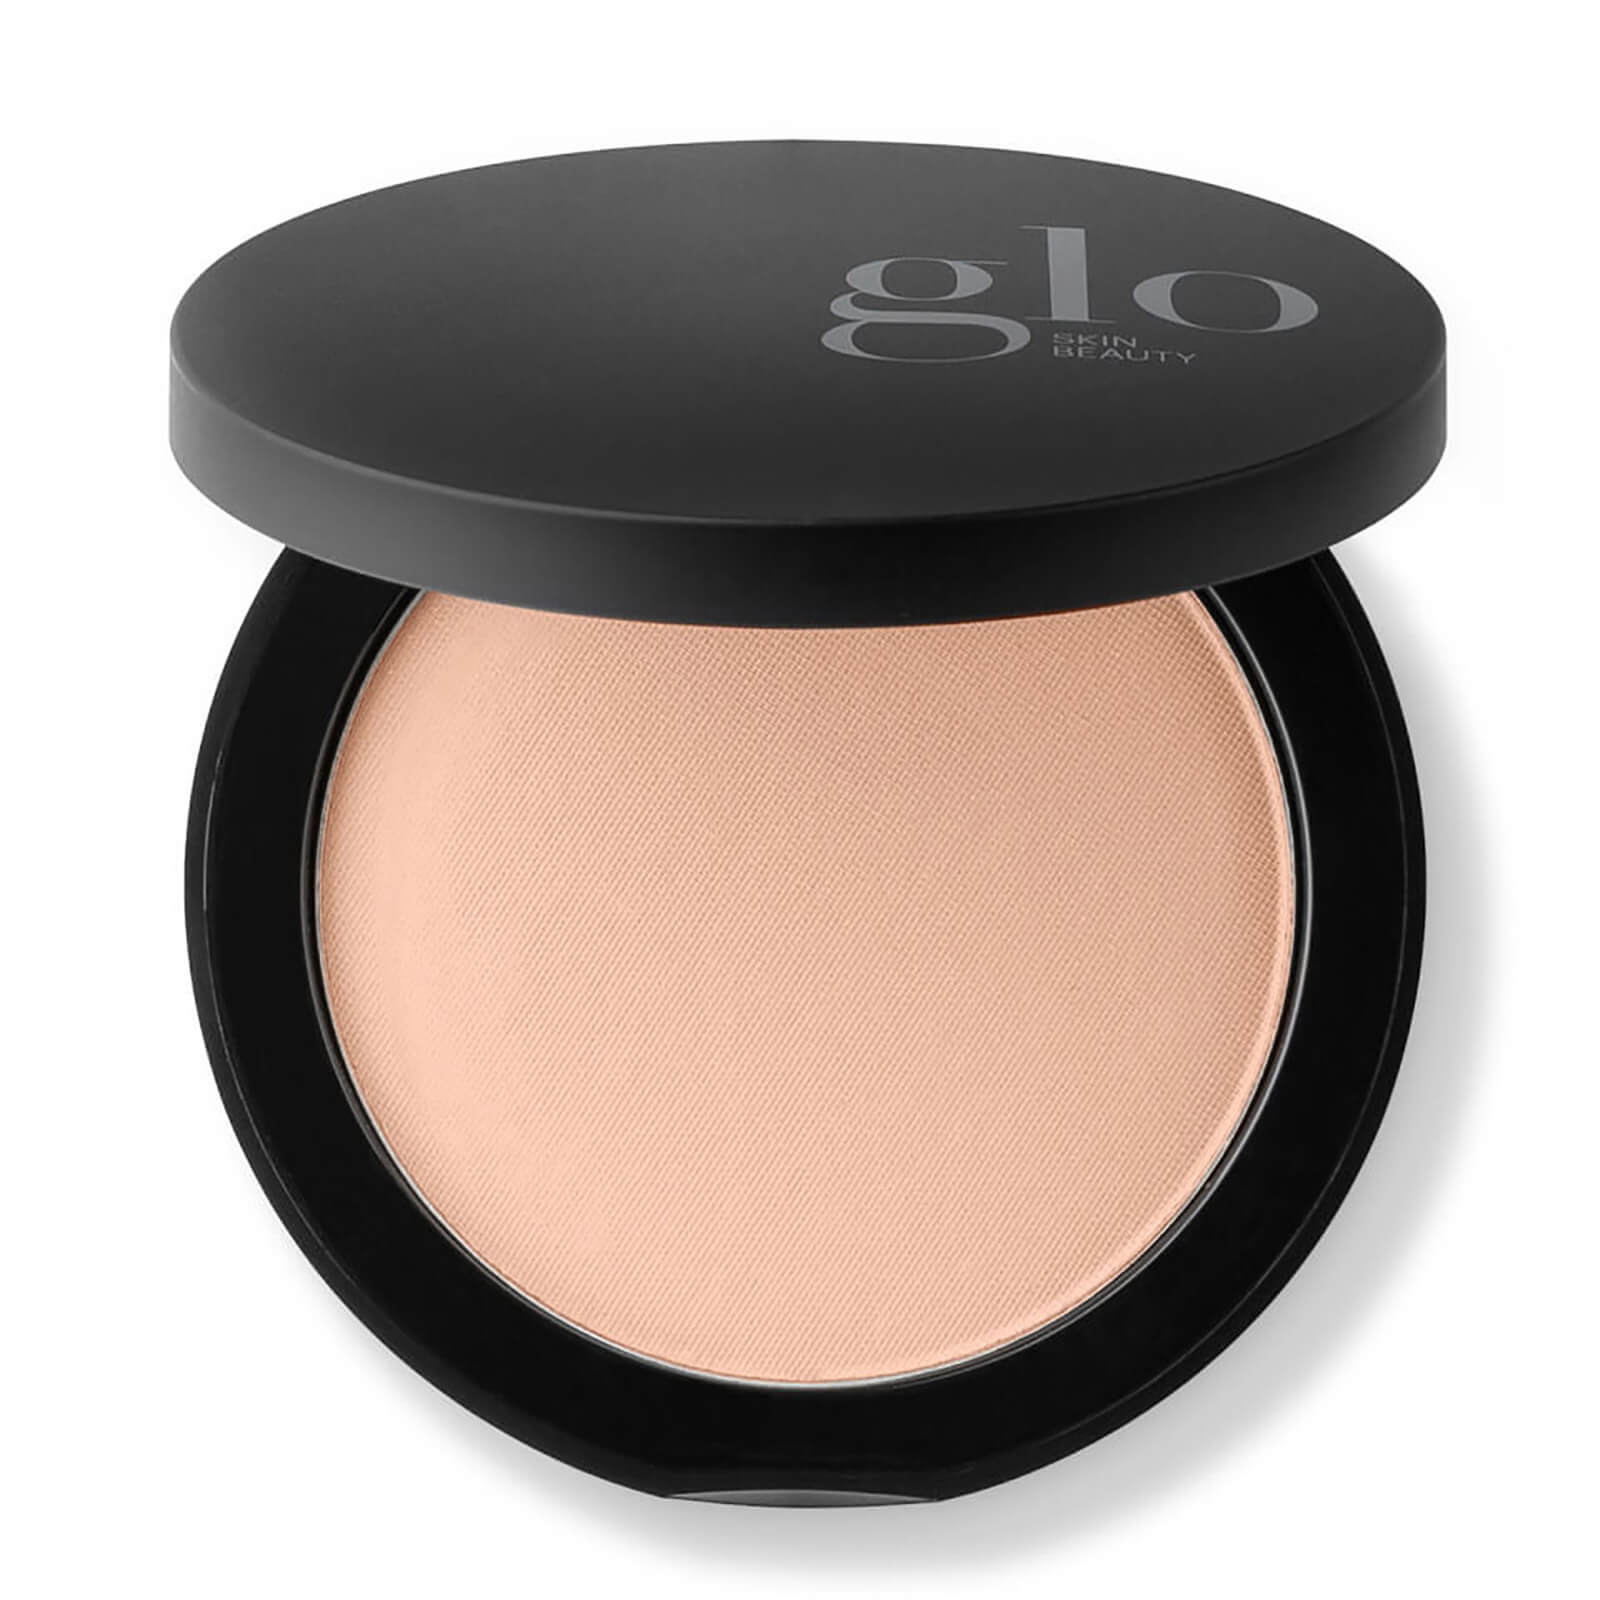 Glo Skin Beauty Pressed Base Powder Foundation (0.35 Oz.) In Beige Medium